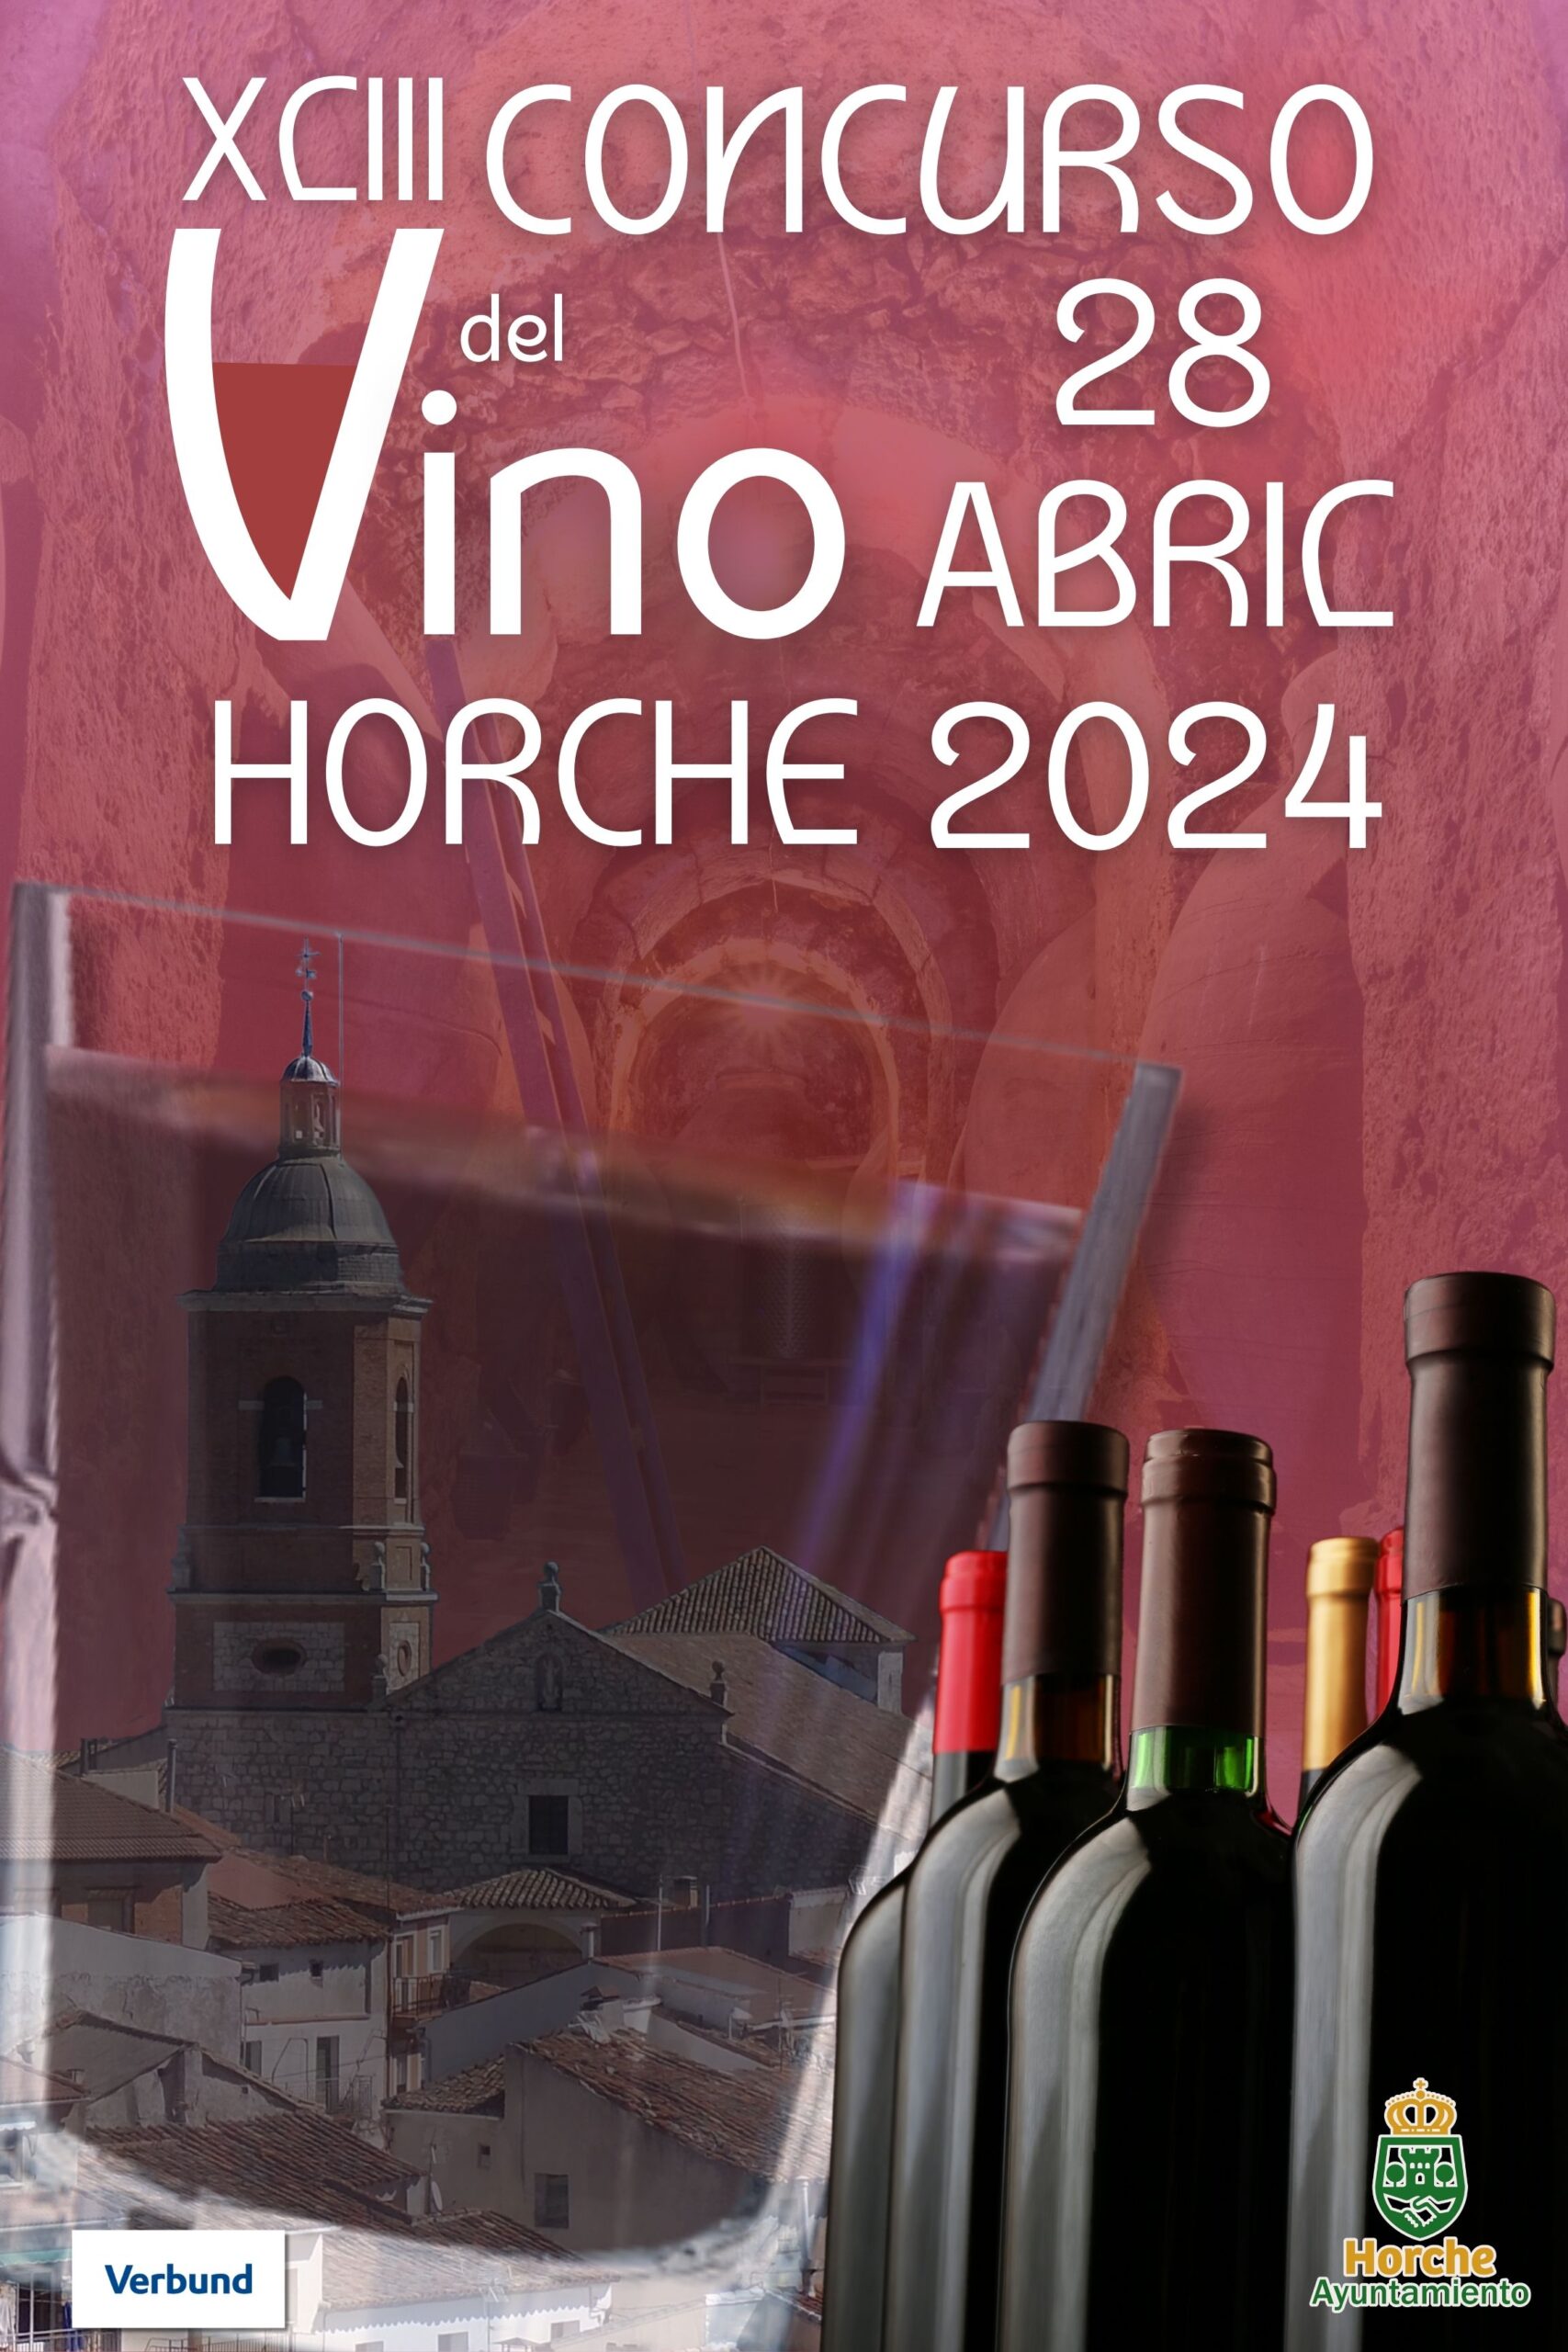 Horche: Tradición Vinícola en el XLIII Concurso del Vino